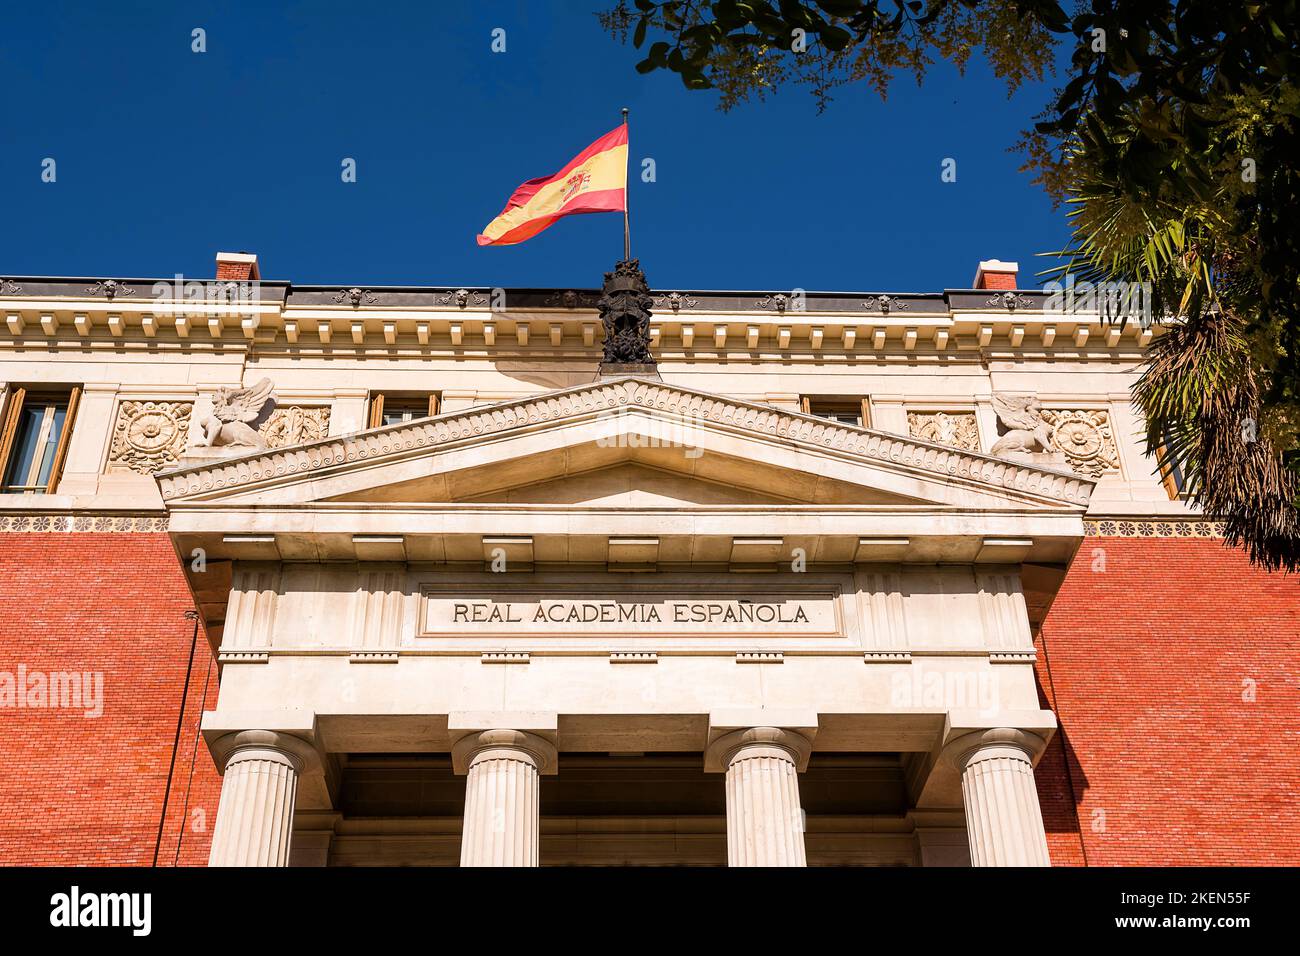 Detalle del tímpano en el edificio de la Real Academia Española (RAE) con bandera en la parte superior Foto de stock